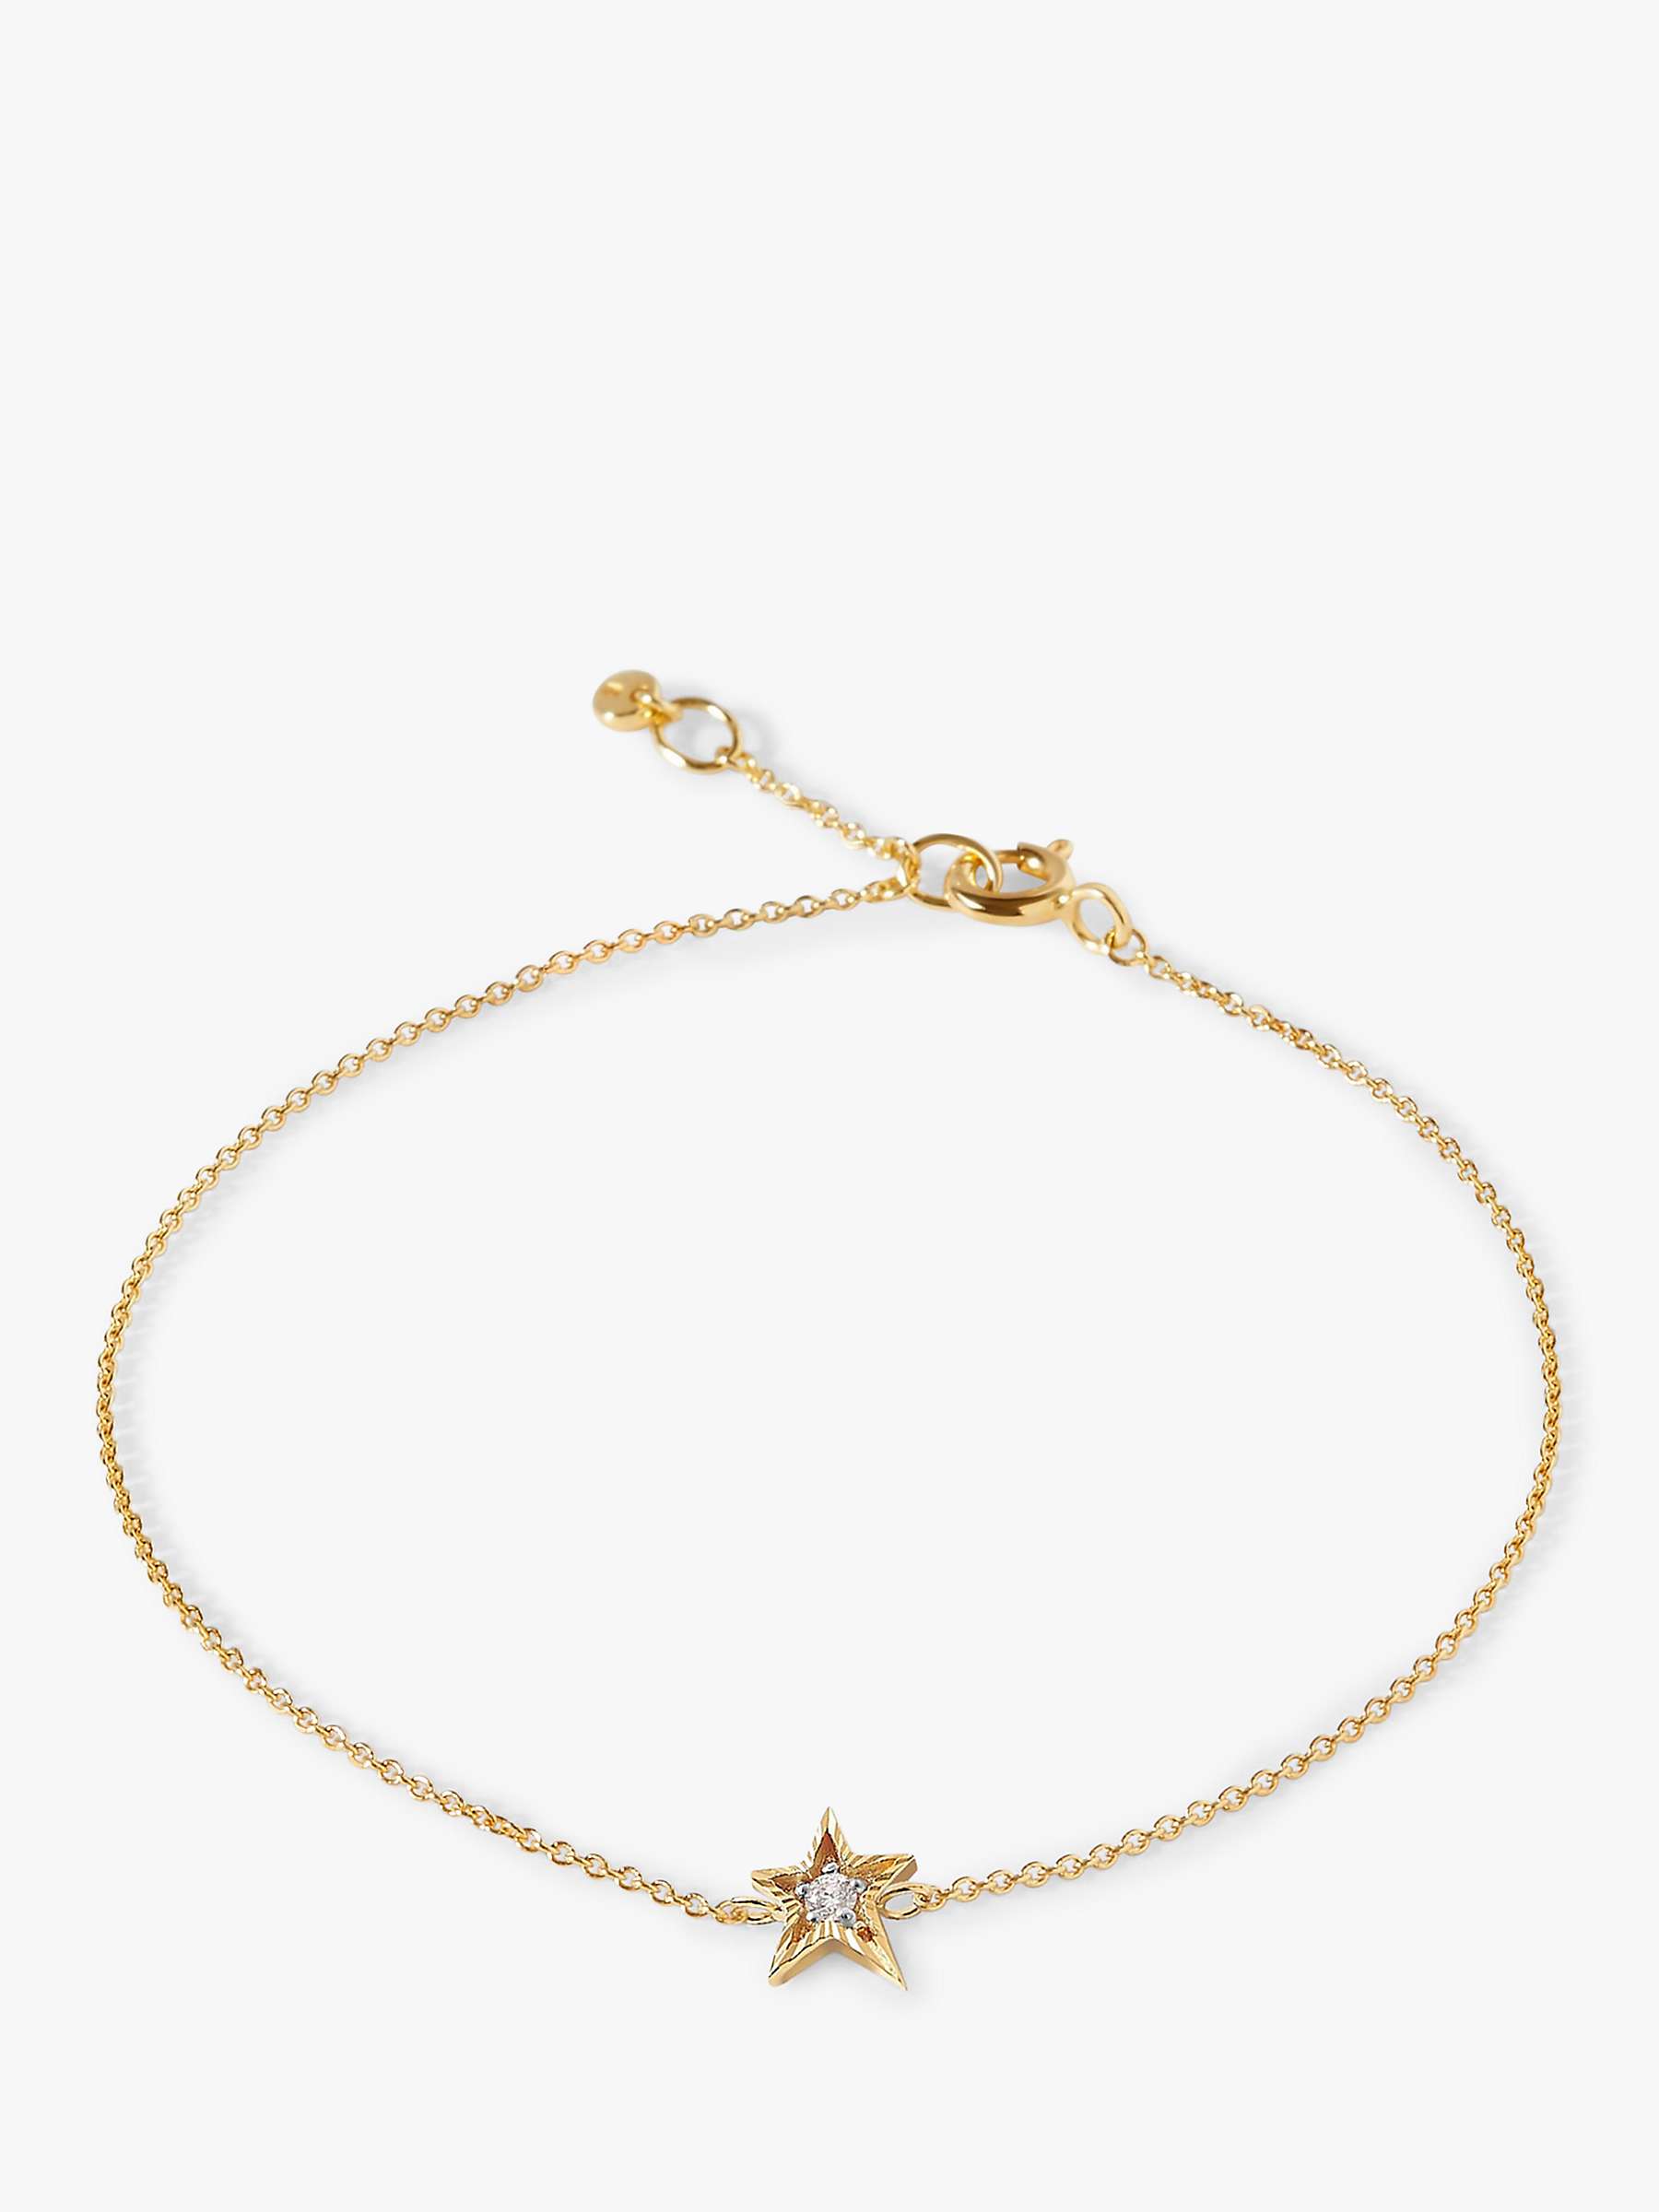 Buy Edge of Ember 14ct Gold Diamond Star Bracelet Online at johnlewis.com